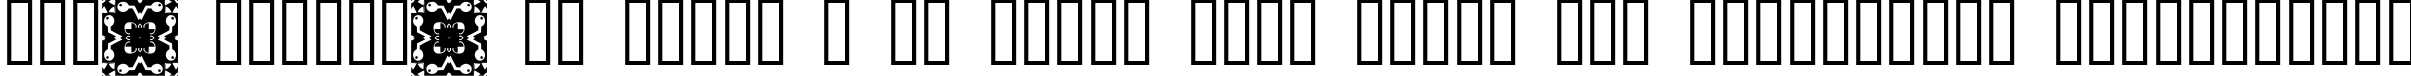 Пример написания шрифтом FontCo Designs 2 текста на украинском